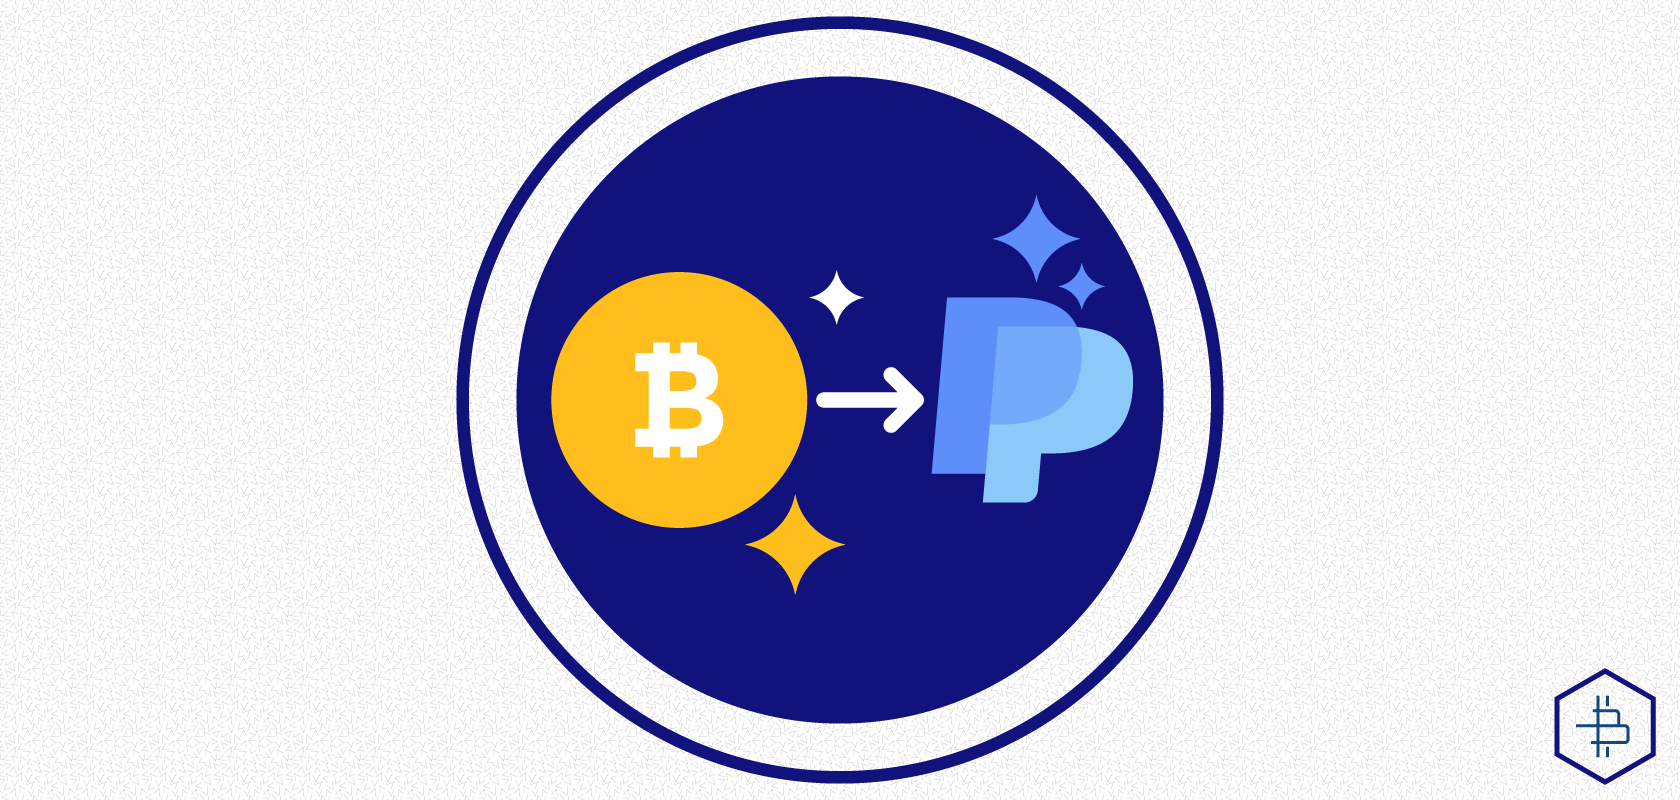 über paypal in bitcoin investieren)